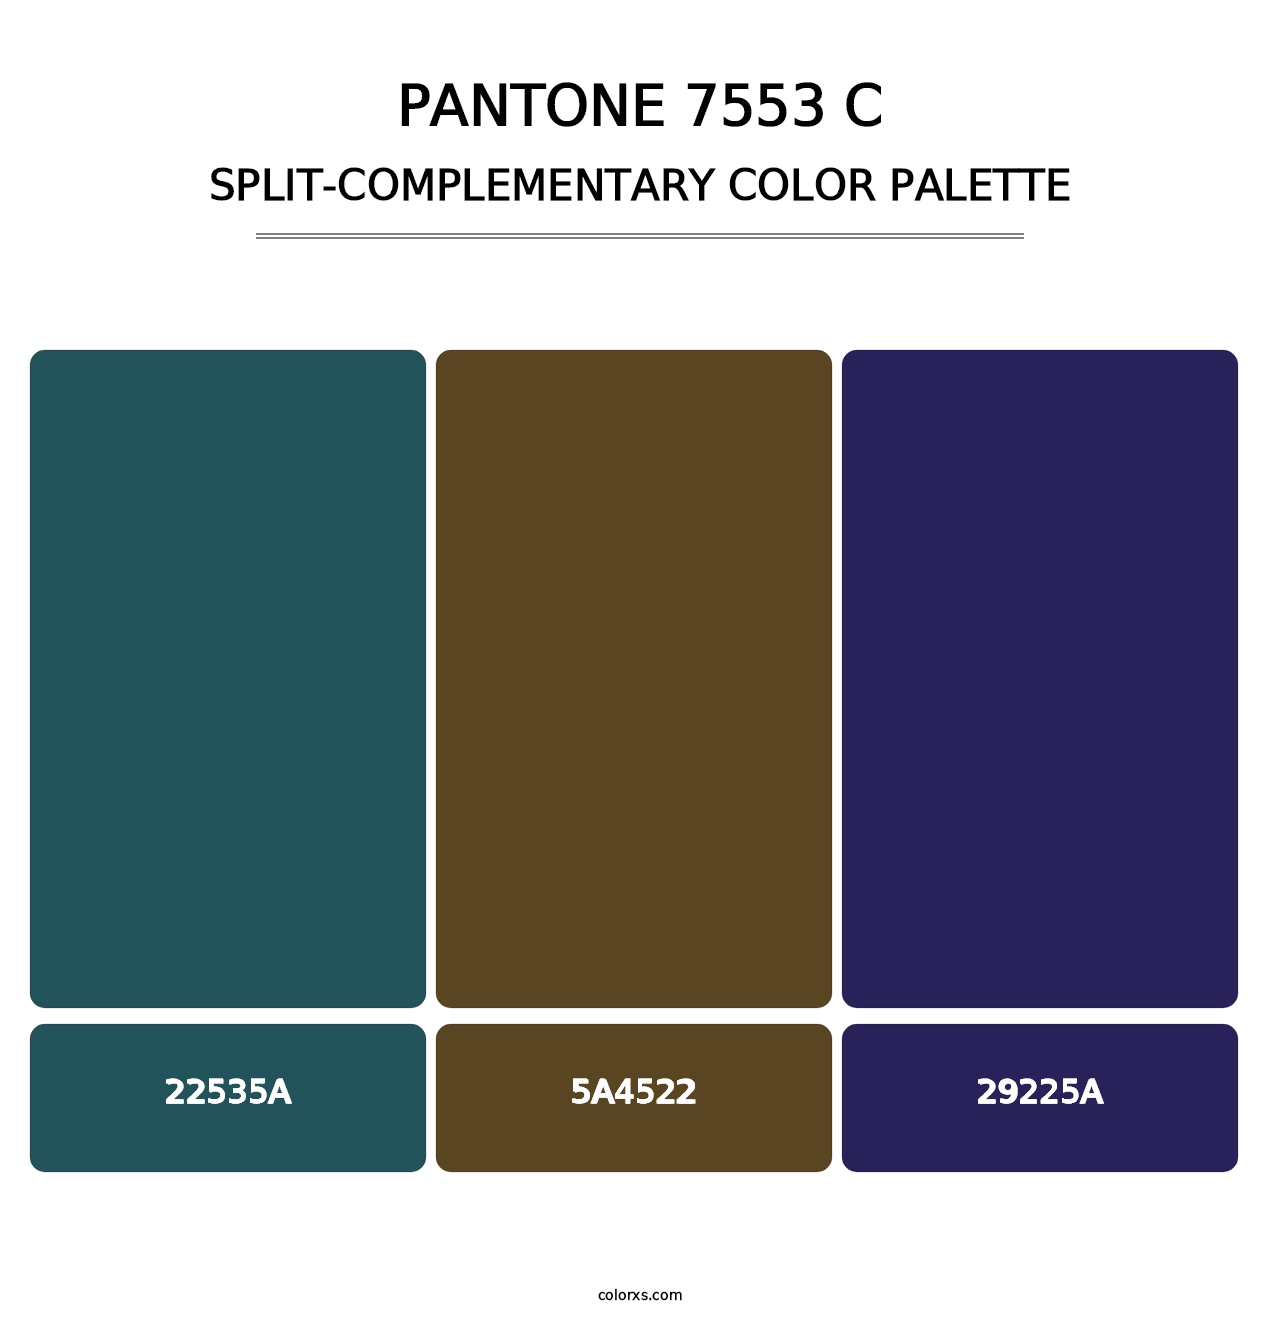 PANTONE 7553 C - Split-Complementary Color Palette